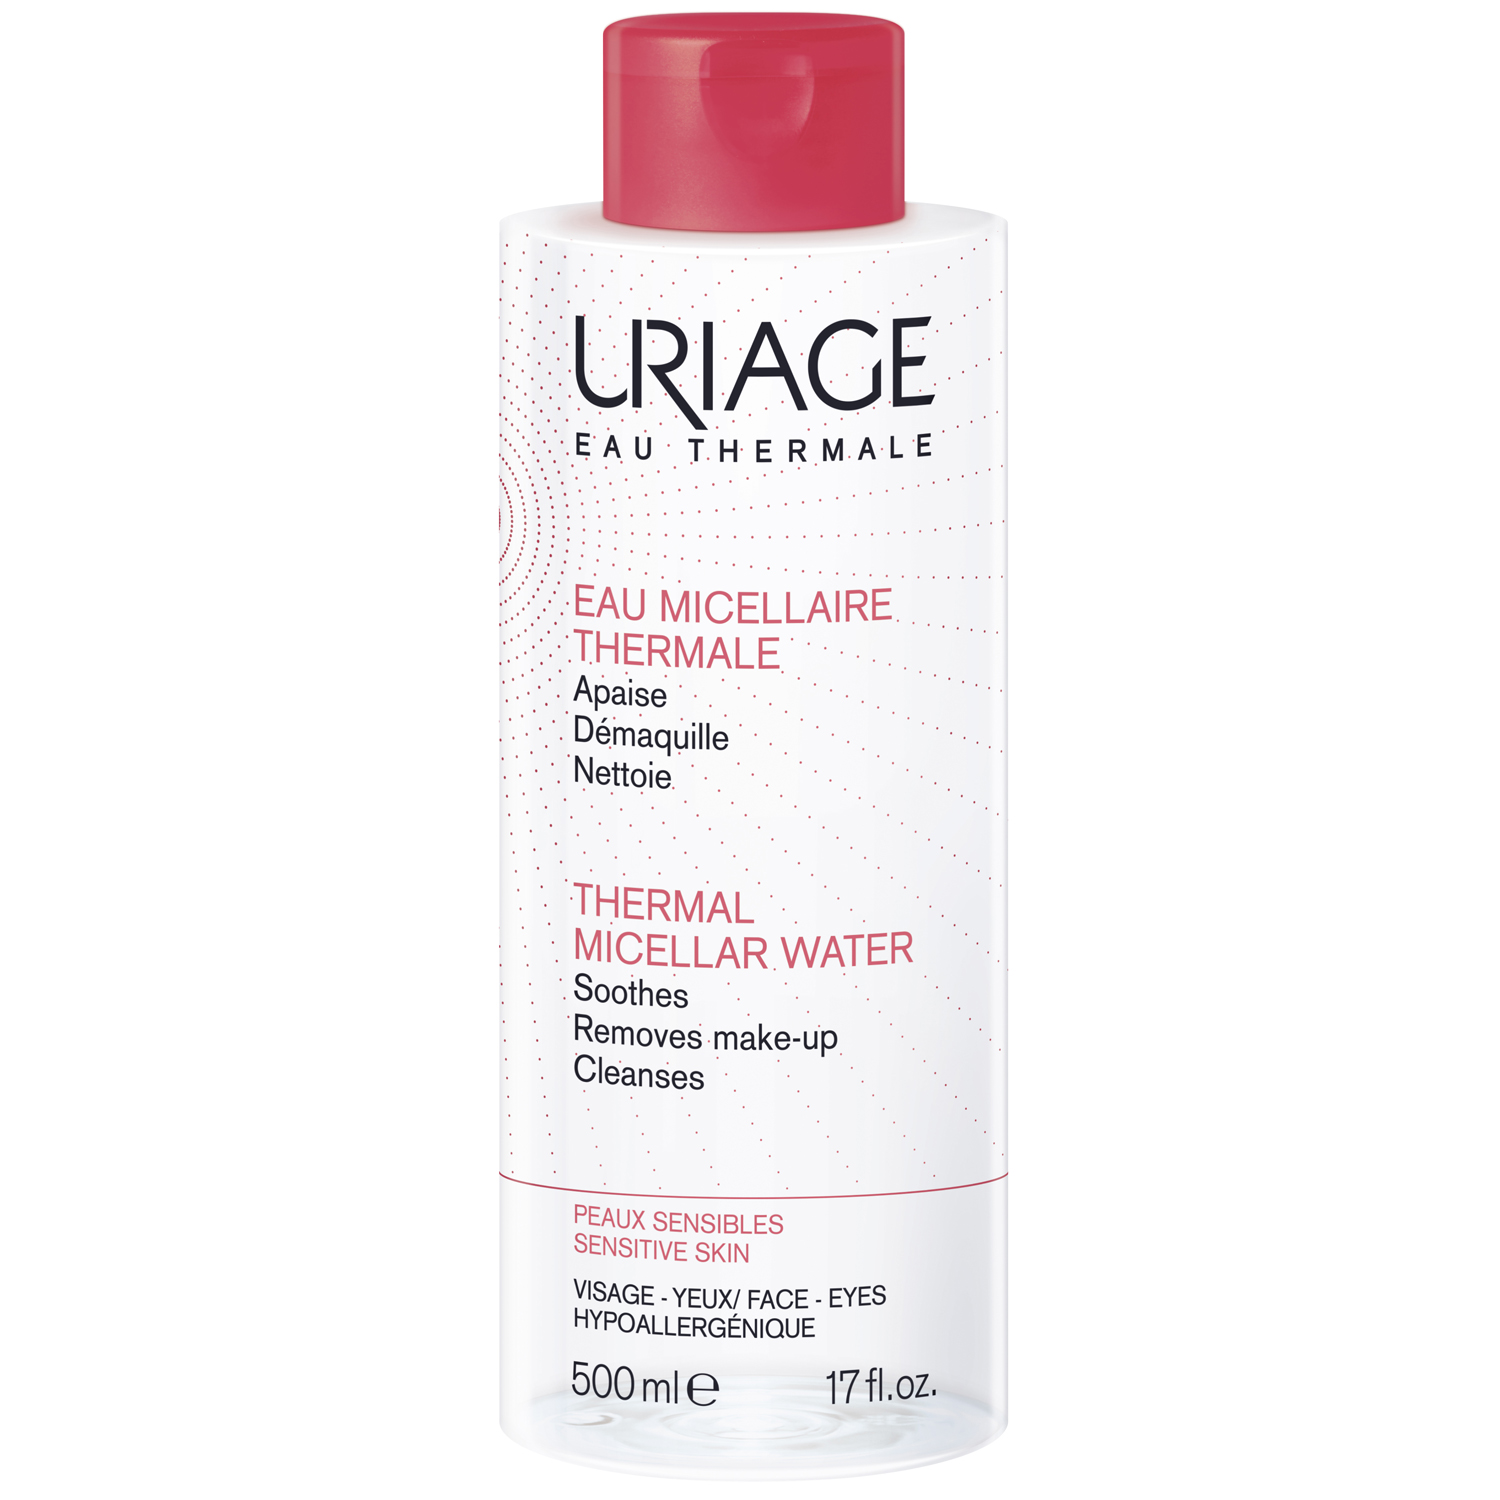 Uriage Очищающая мицеллярная вода для чувствительной кожи, 500 мл (Uriage, Гигиена Uriage) uriage очищающая мицеллярная вода для гиперчувствительной кожи 500 мл